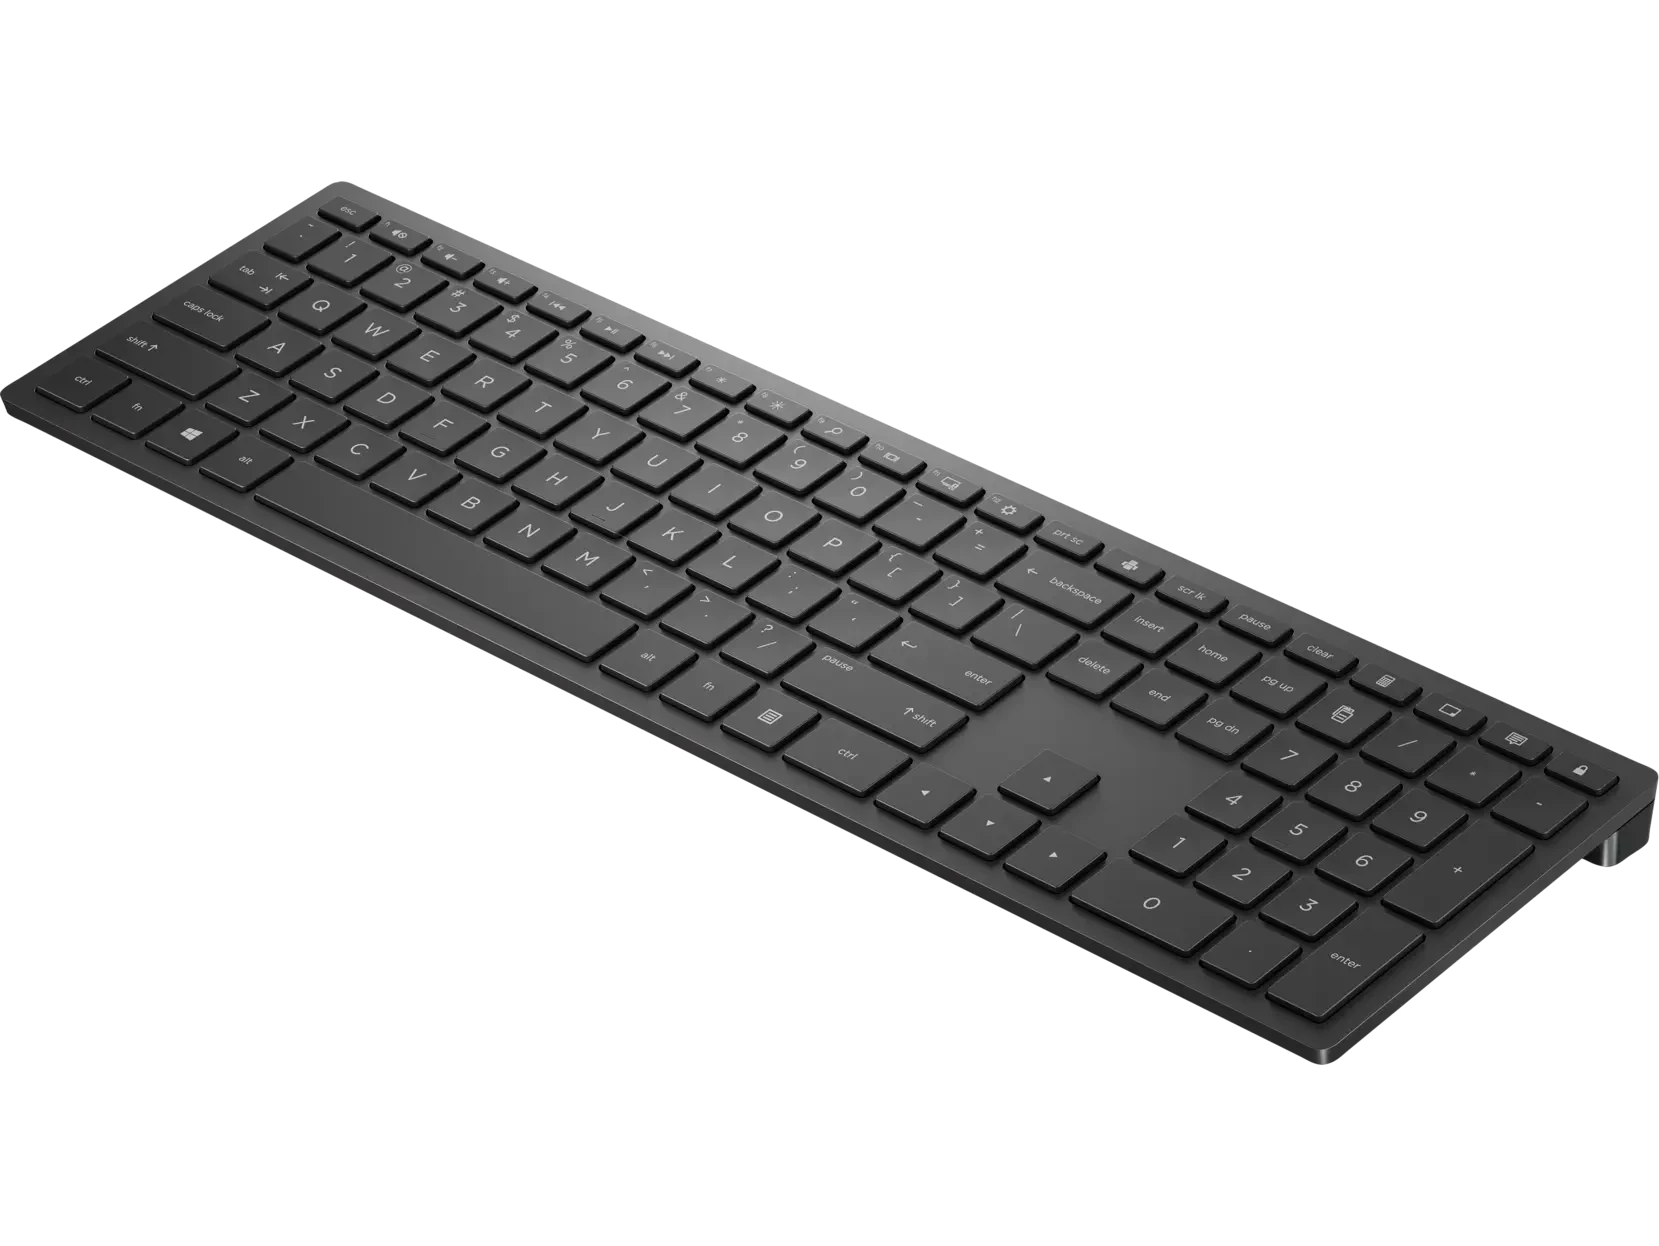 HP Pavilion Wireless Keyboard 600 Swiss Black - 4CE98AA